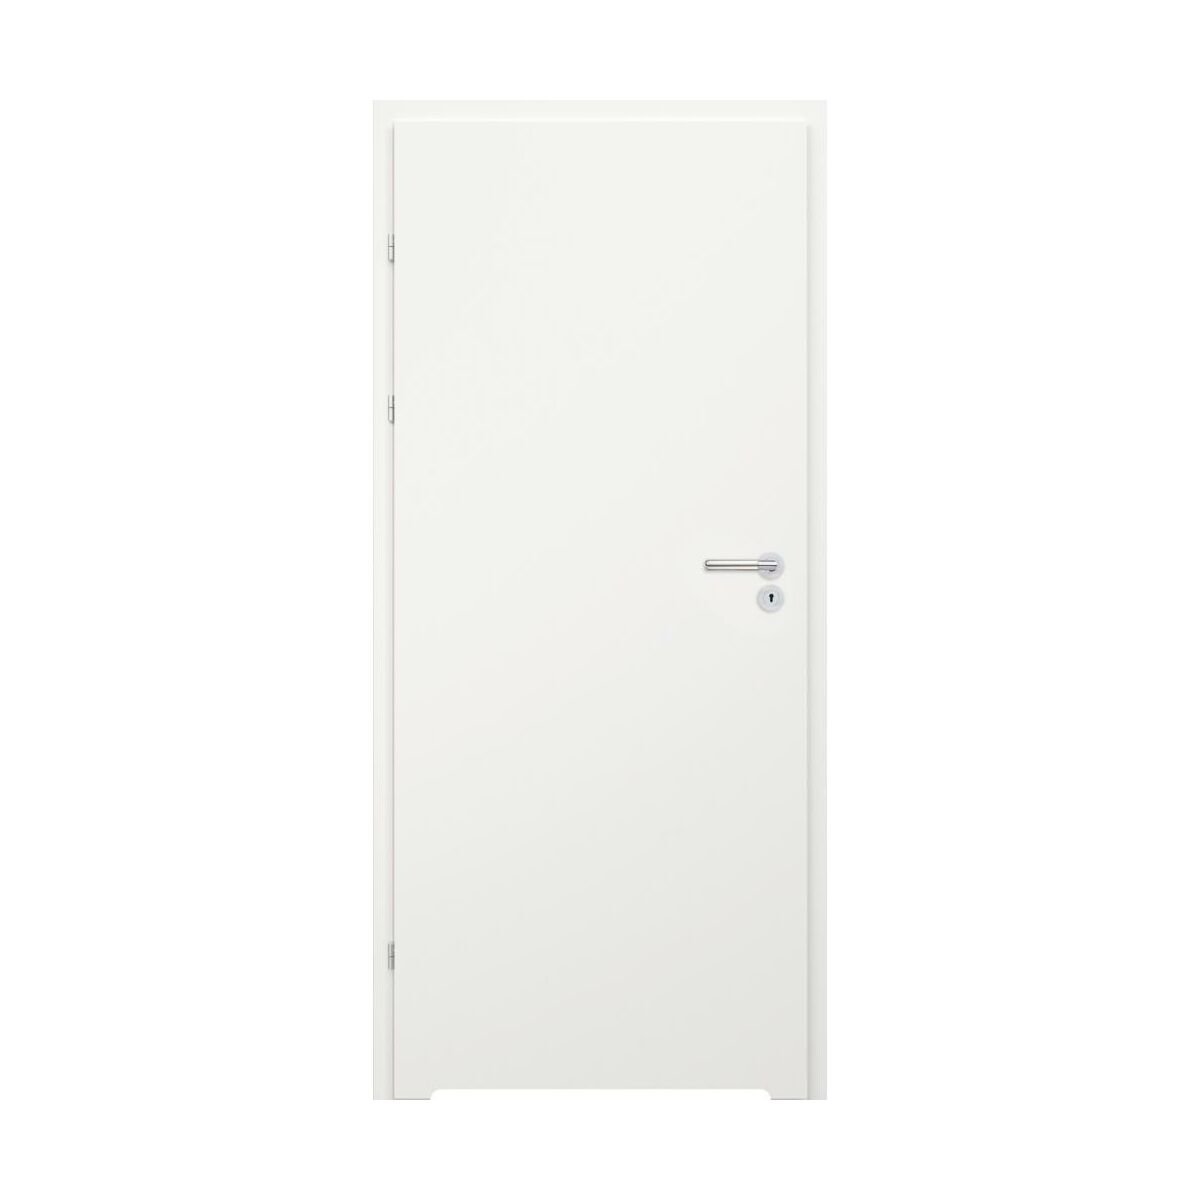 Drzwi wewnętrzne lakierowane łazienkowe pełne z podcięciem wentylacyjnym Kesa białe 60 lewe Classen